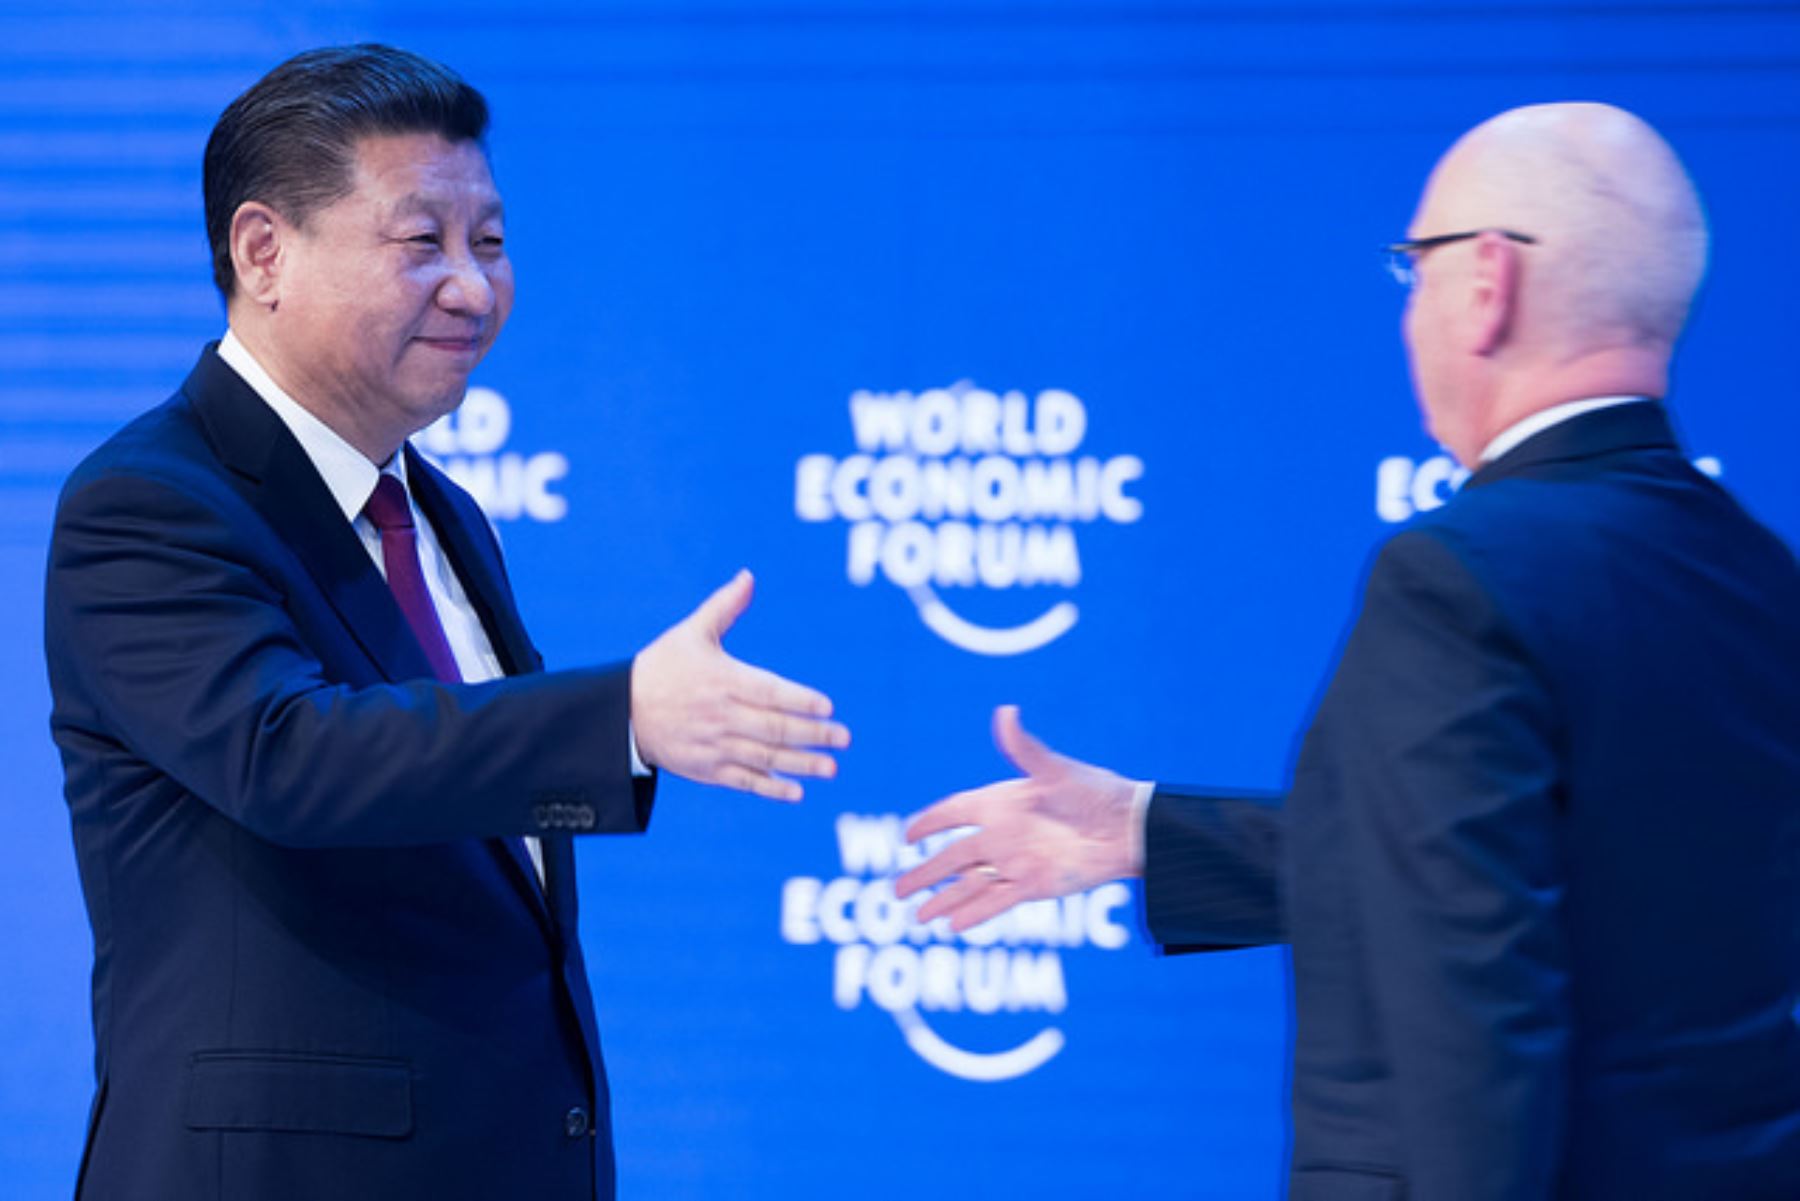 El presidente de China, Xi Jinping, saluda al presidente ejecutivo del Foro Económico Mundial, Klaus Schwab.  Foto: WEF.